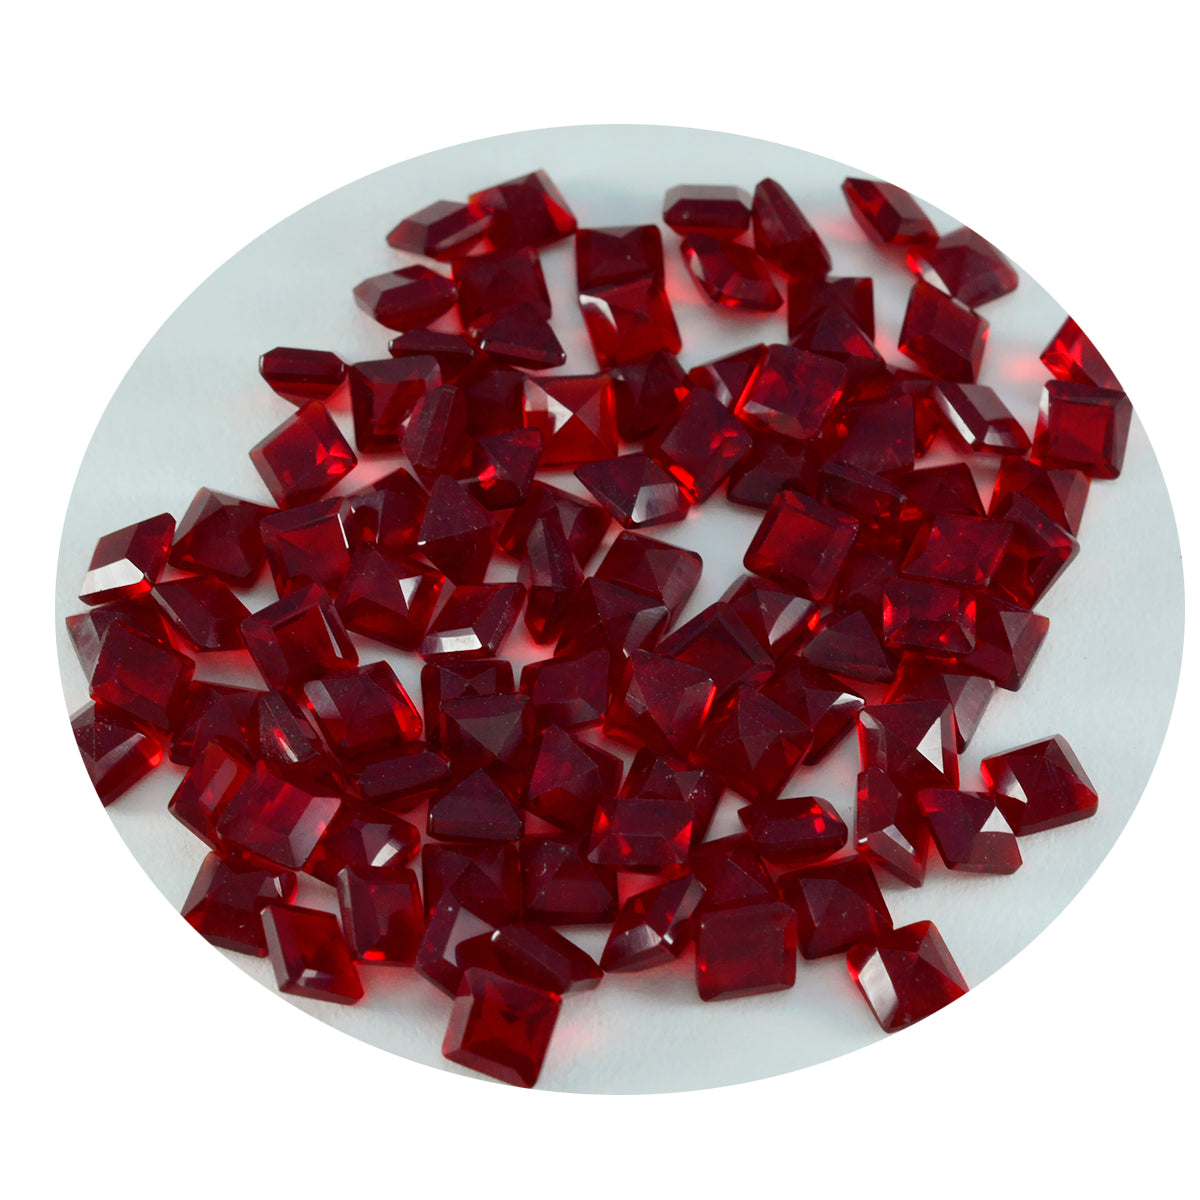 riyogems 1 шт. красный рубин cz ограненный 5x5 мм квадратной формы красивый качественный драгоценный камень